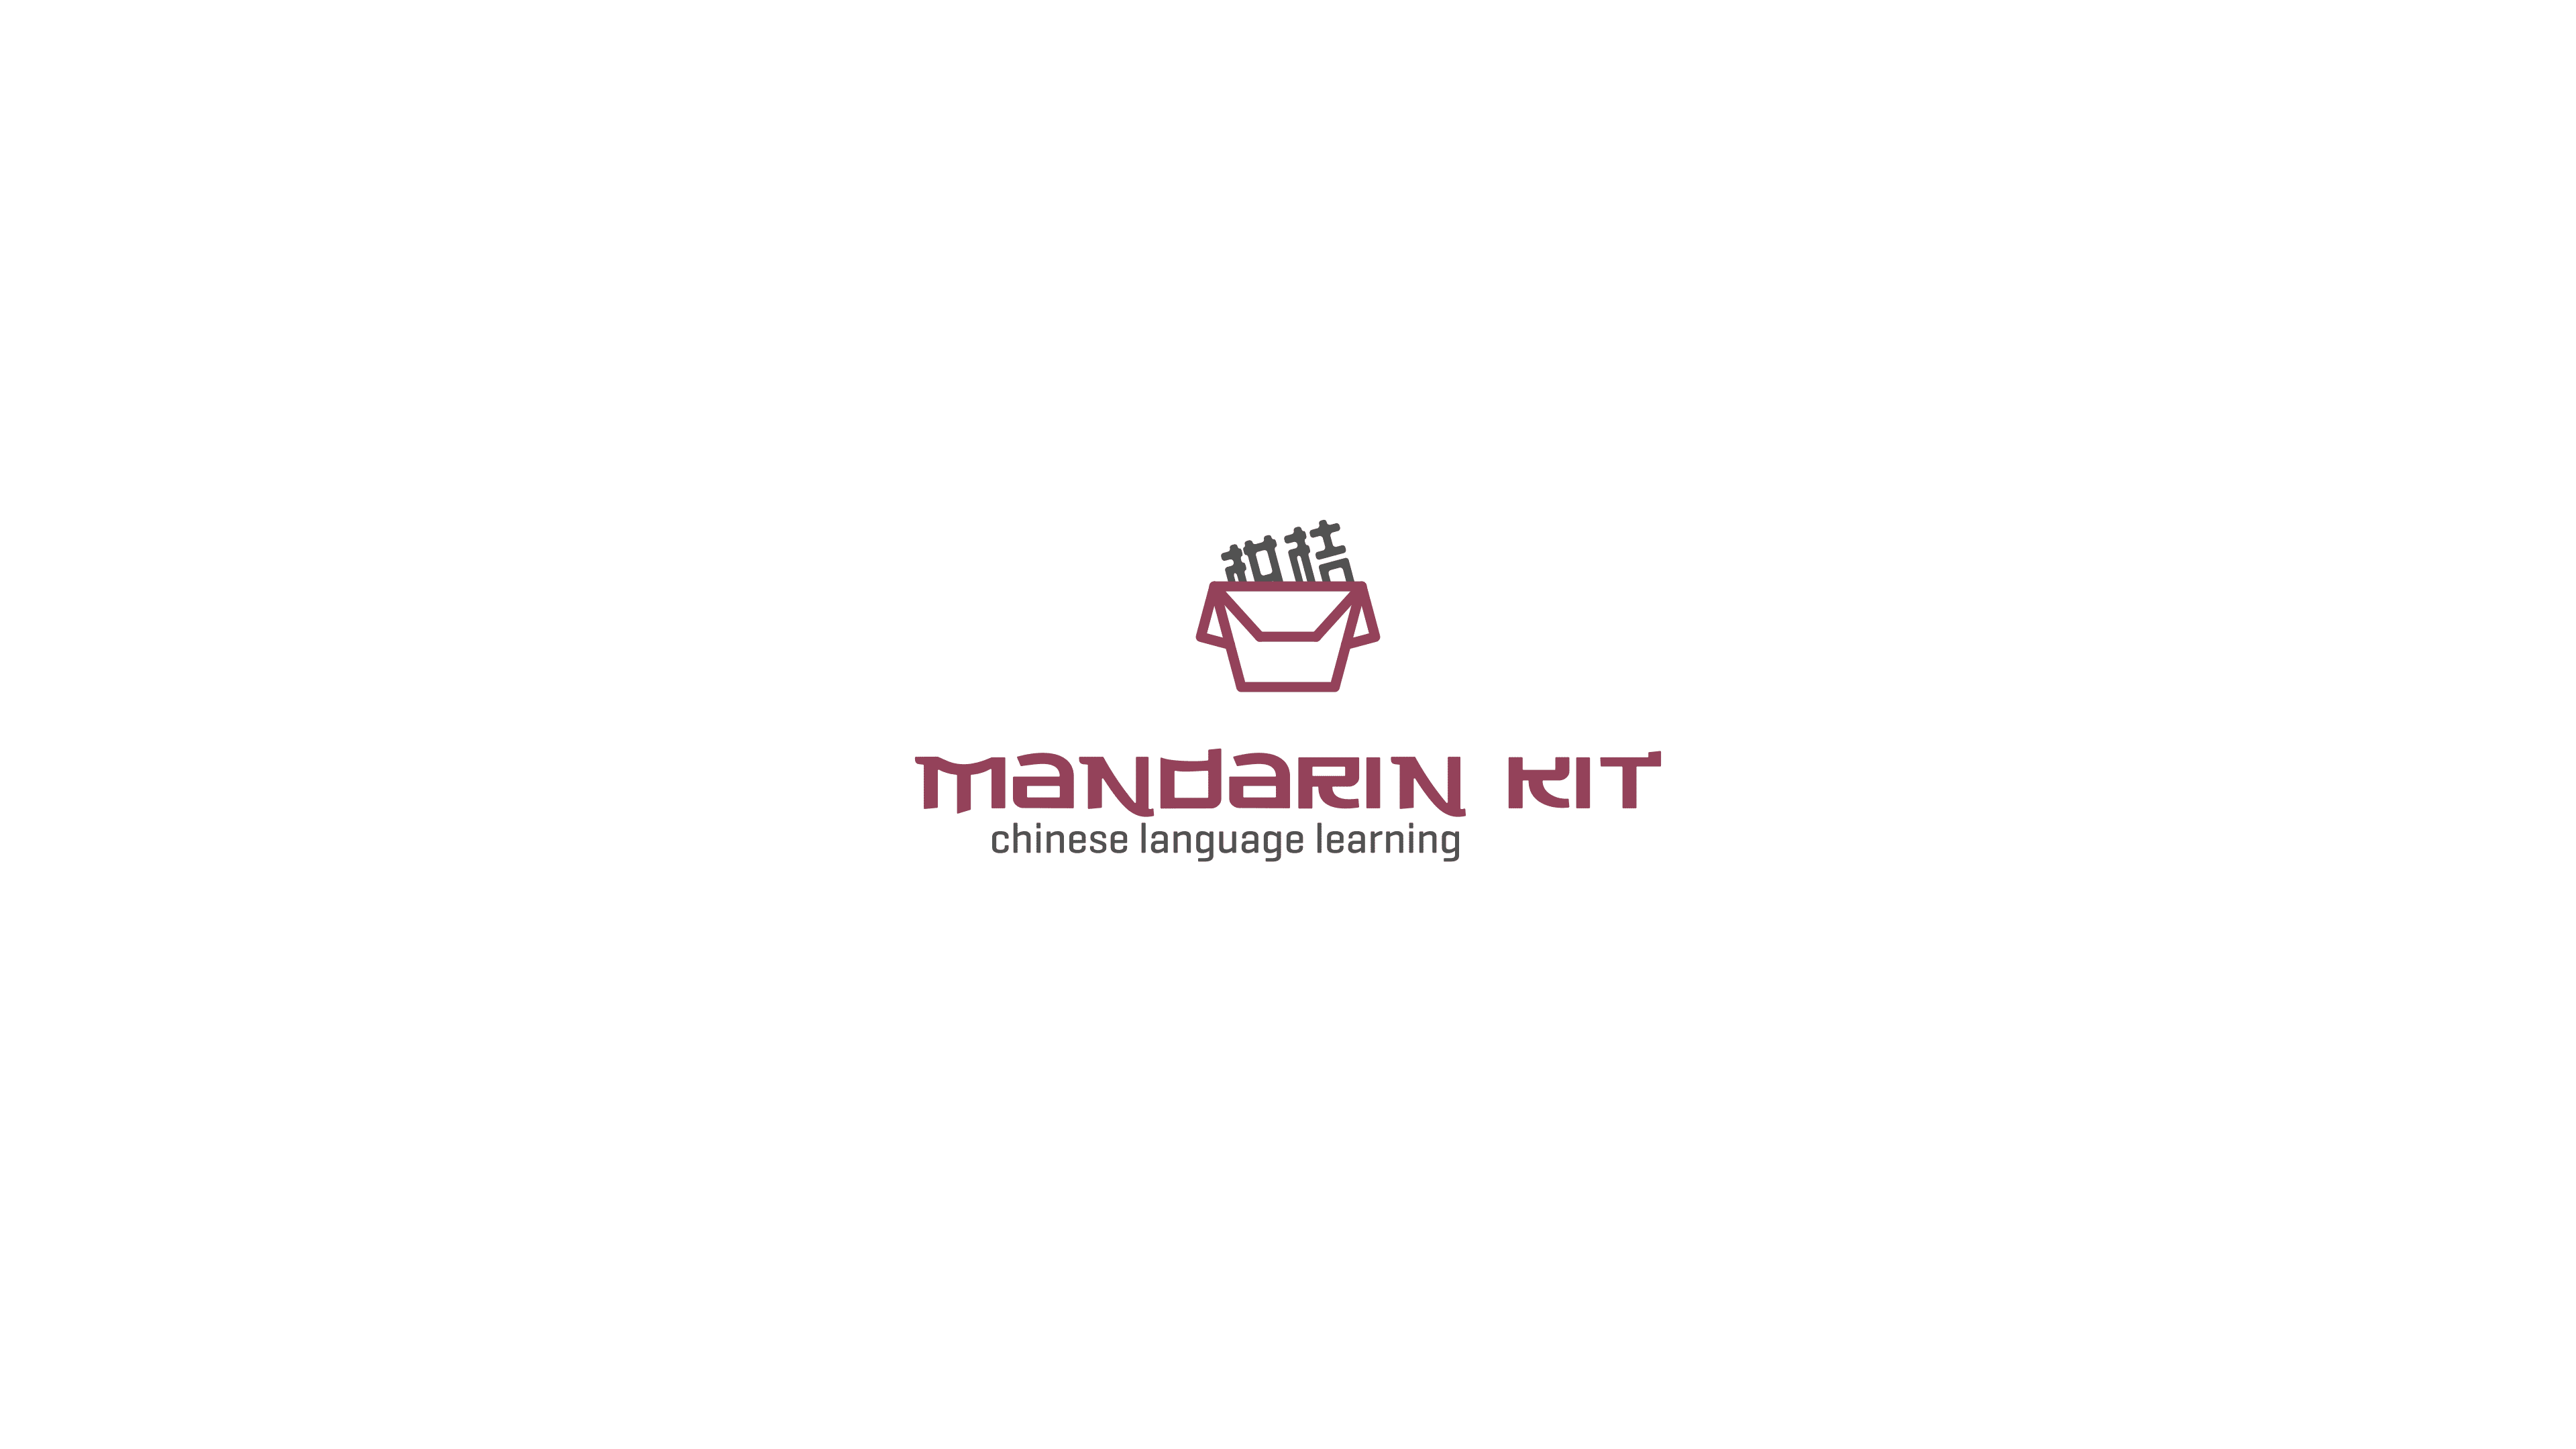 Mandarin kit logo